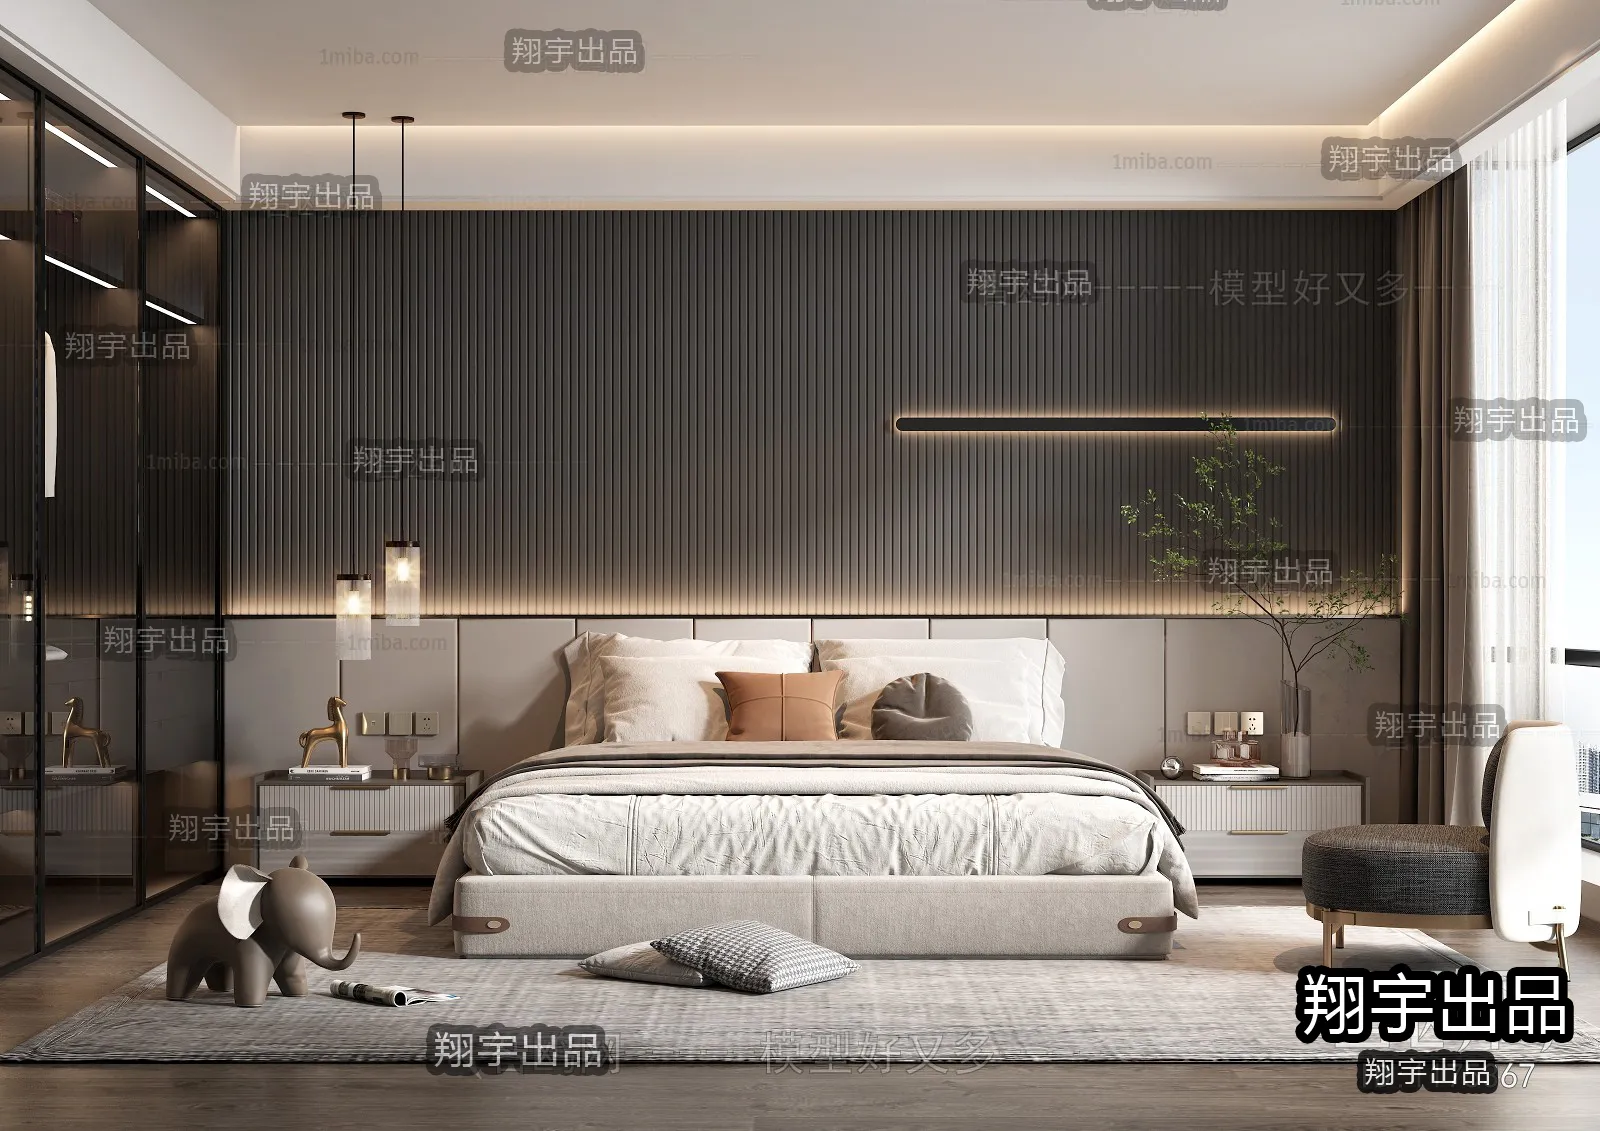 Bedroom – Modern Interior Design – 3D Models – 023